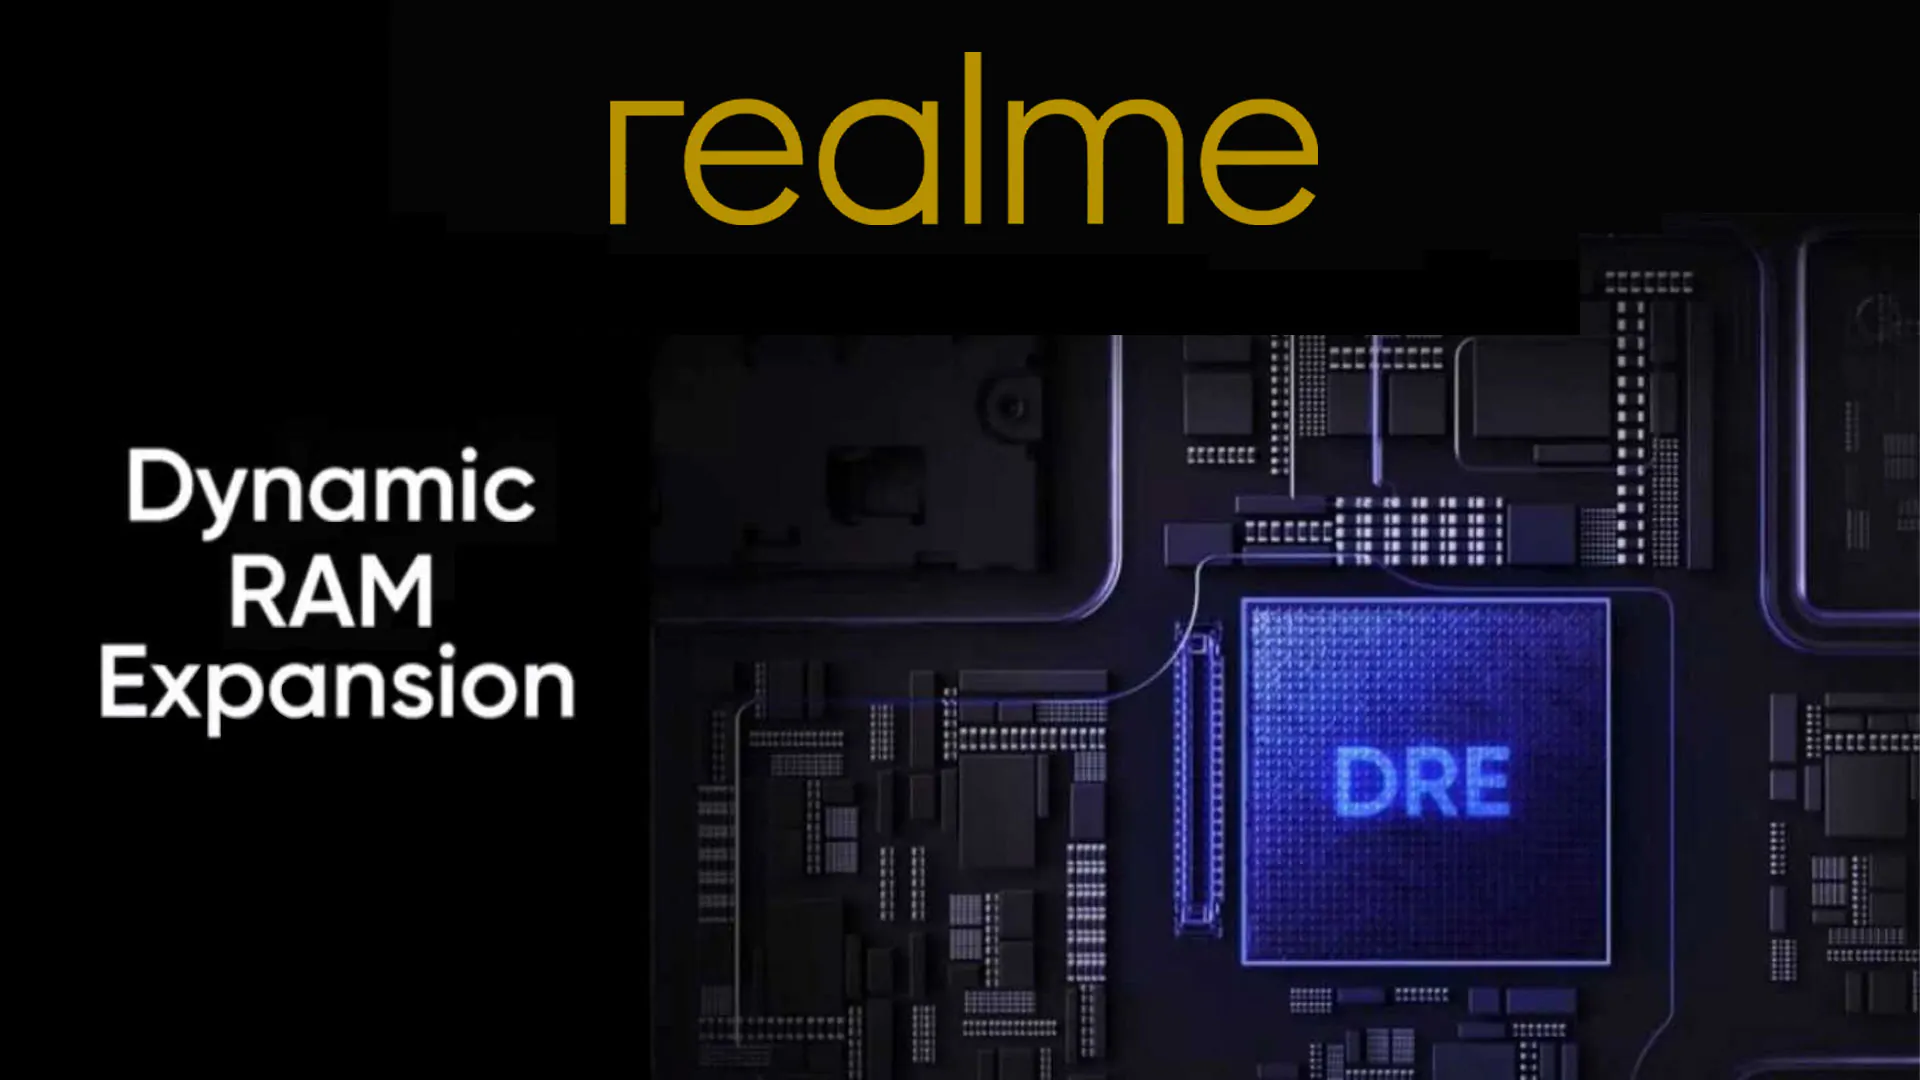 39 smartfonów Realme otrzymuje wsparcie w zakresie rozszerzania dynamicznej pamięci RAM